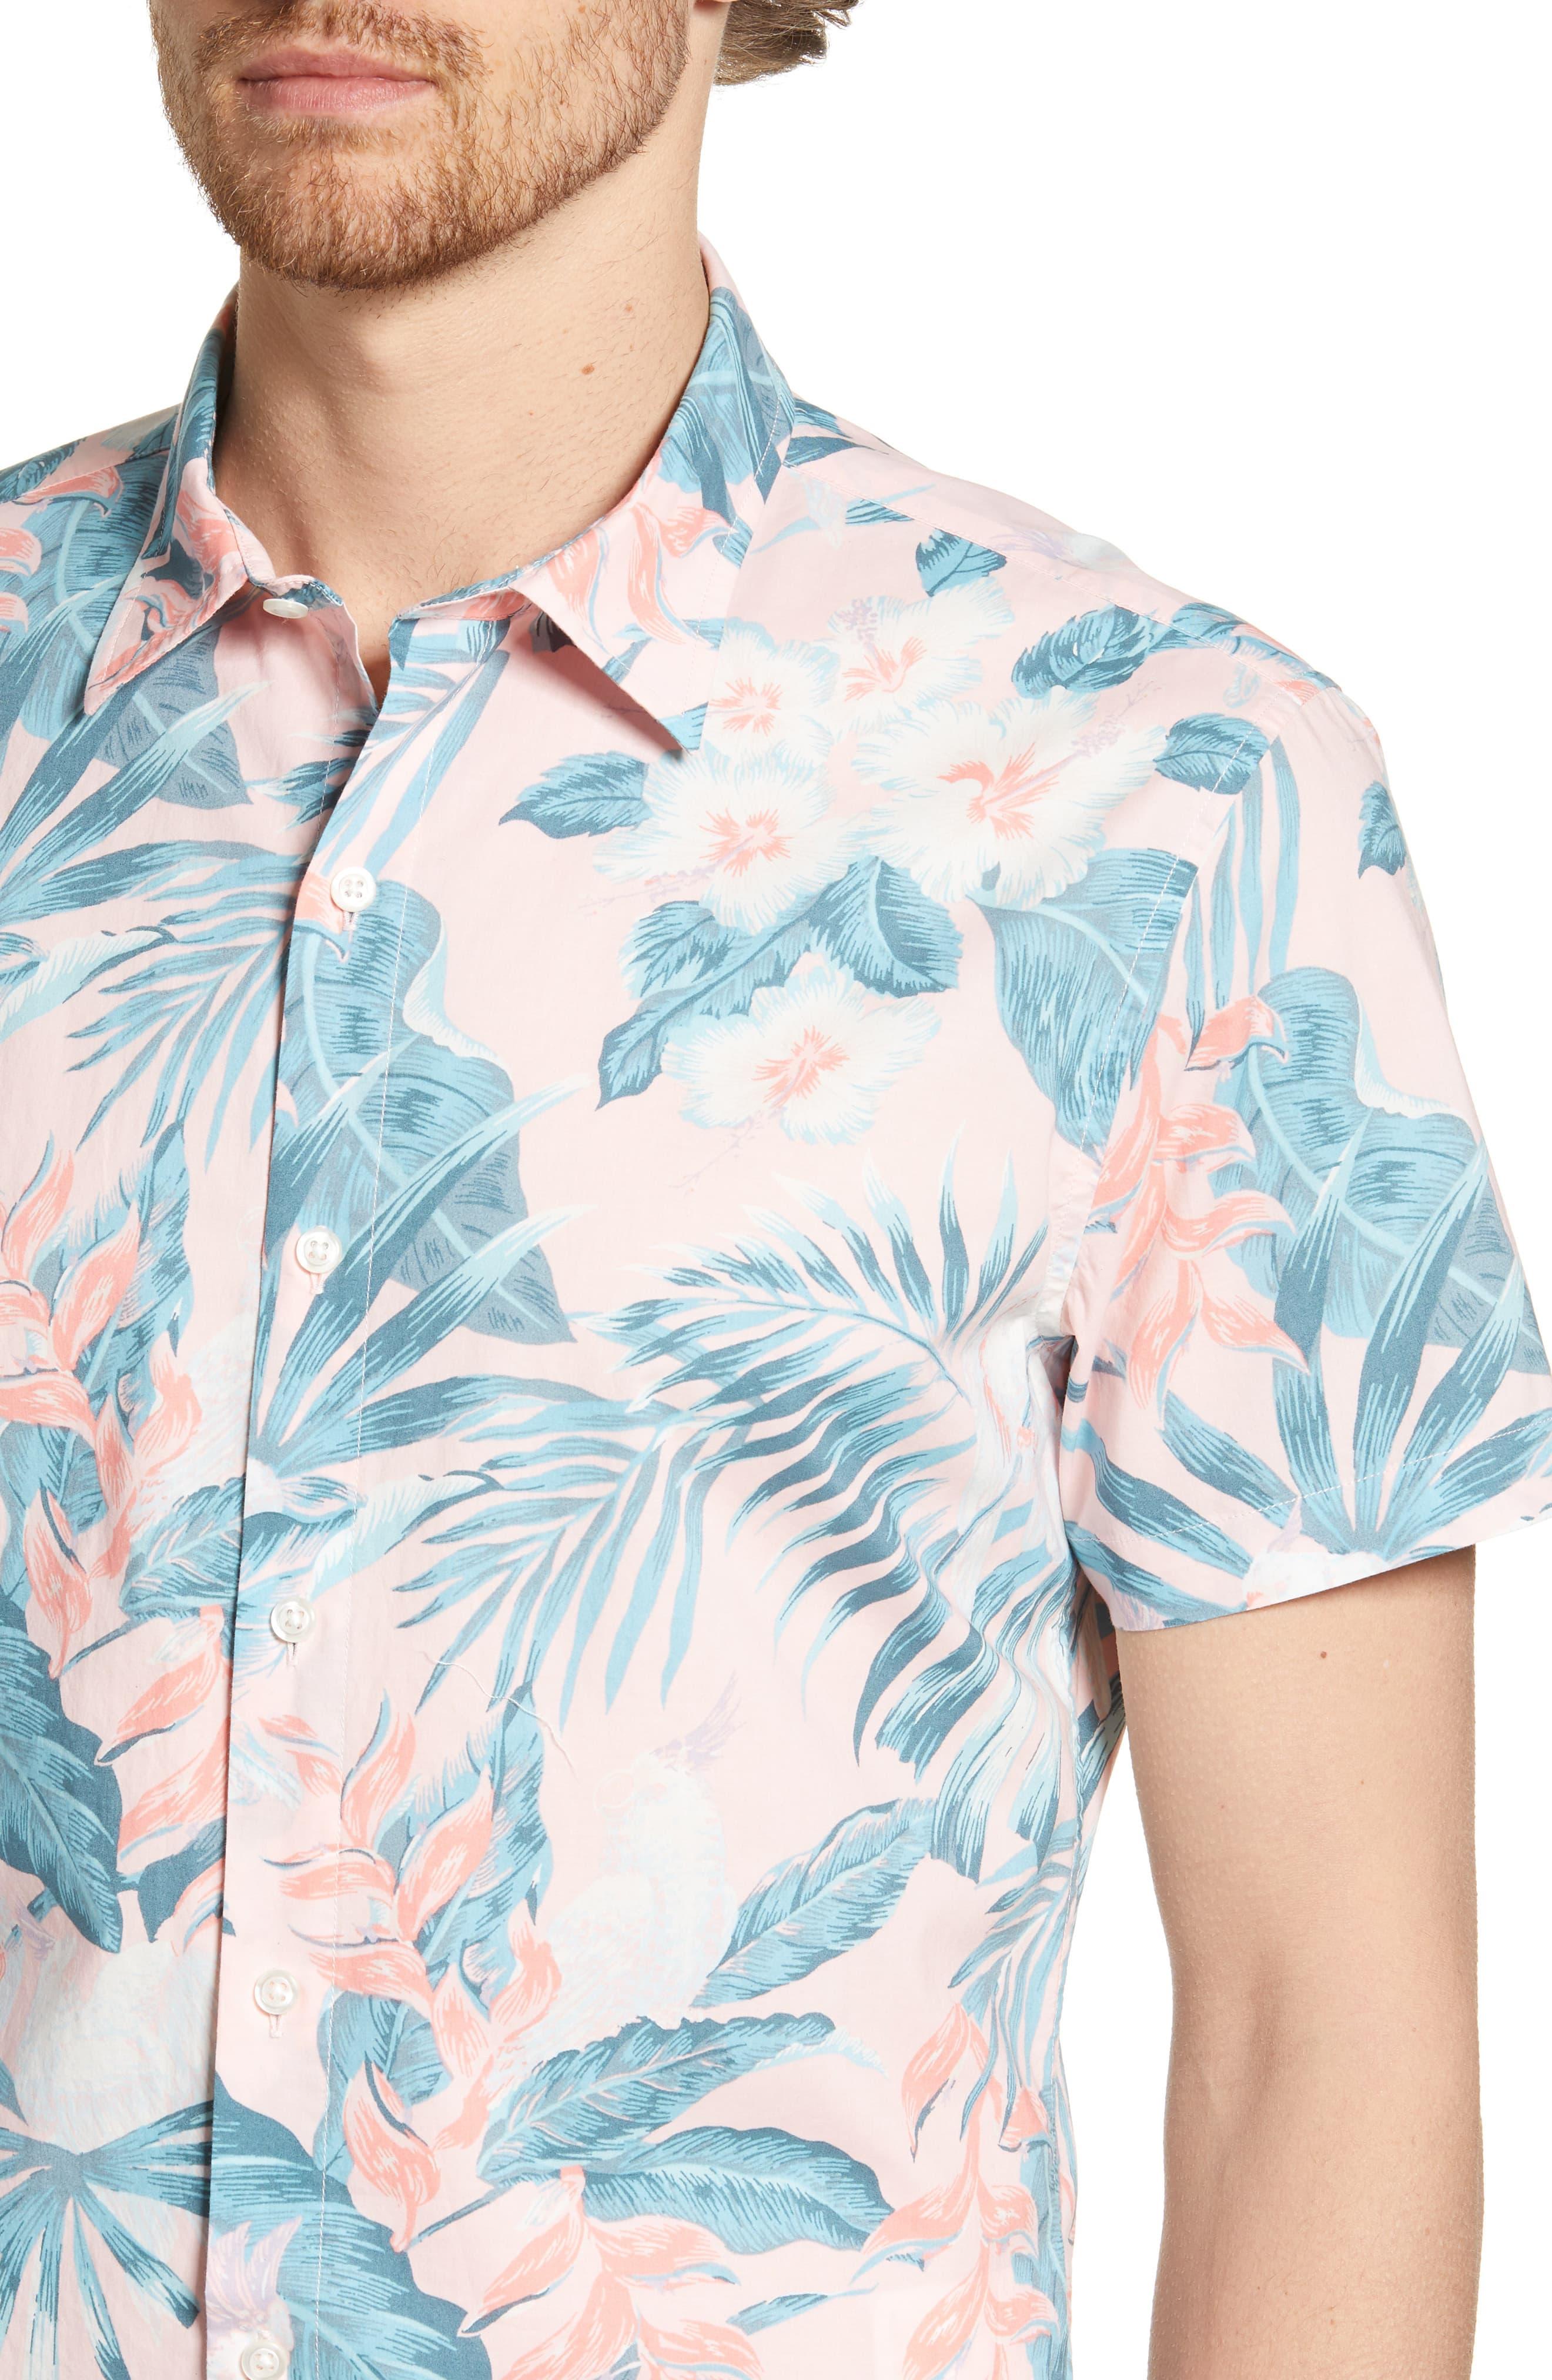 Bonobos Riviera Slim Fit Tropical Print Shirt in Blue for Men - Lyst